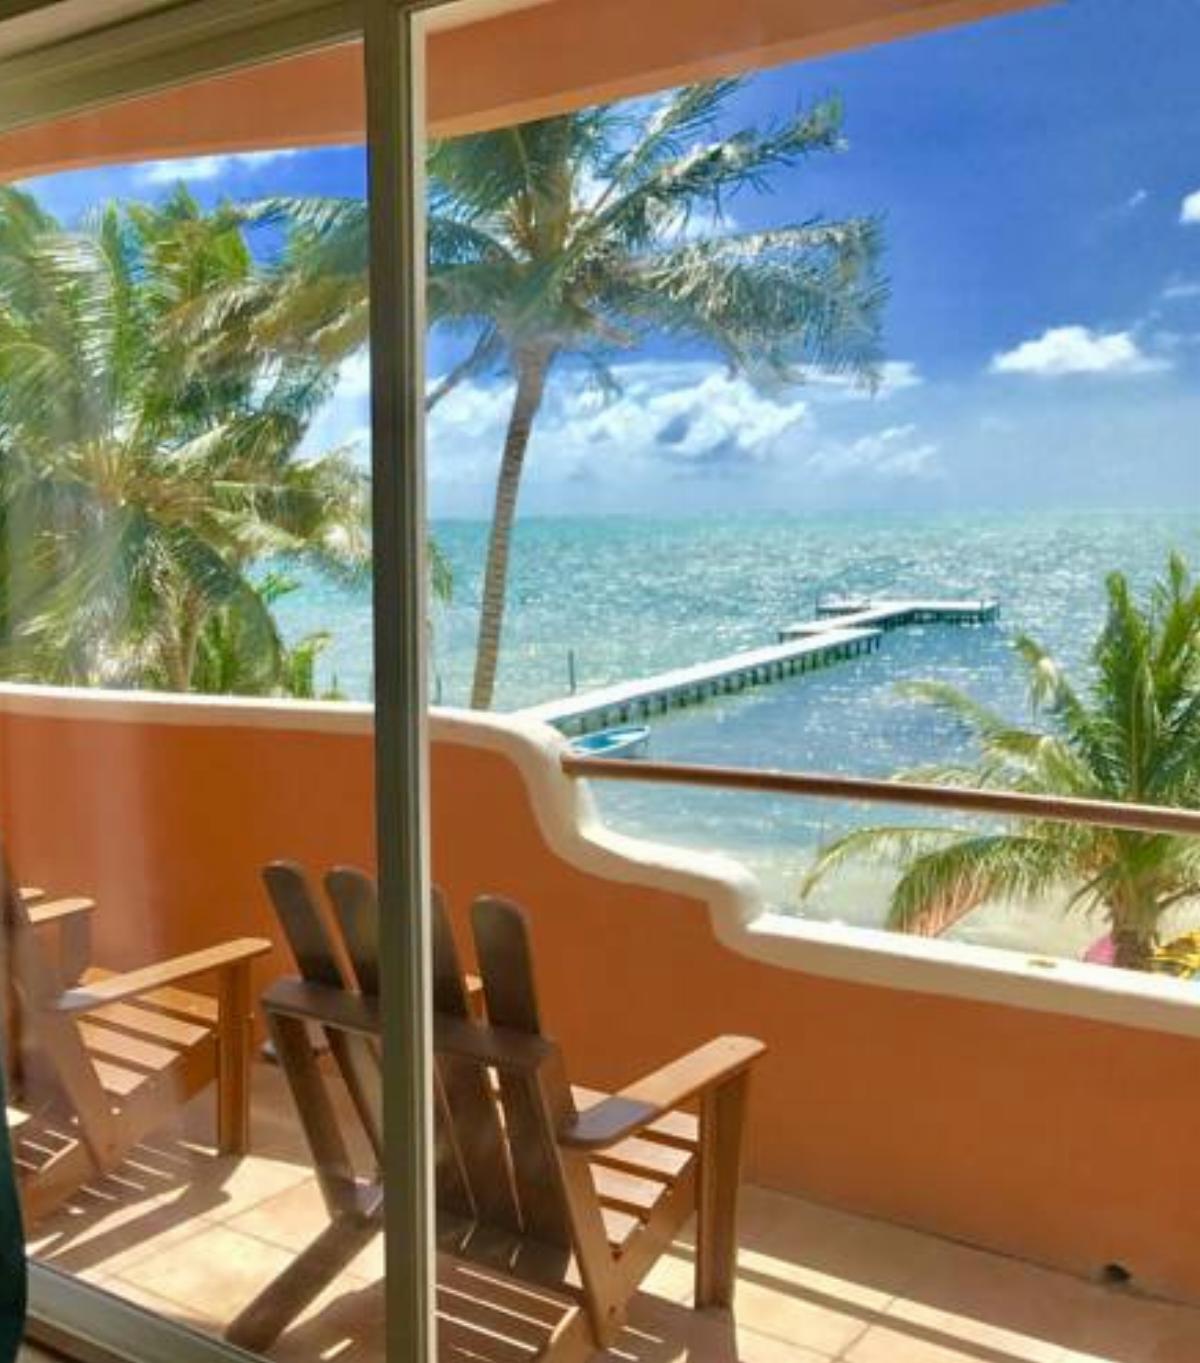 Seaside Villas Hotel Caye Caulker Belize